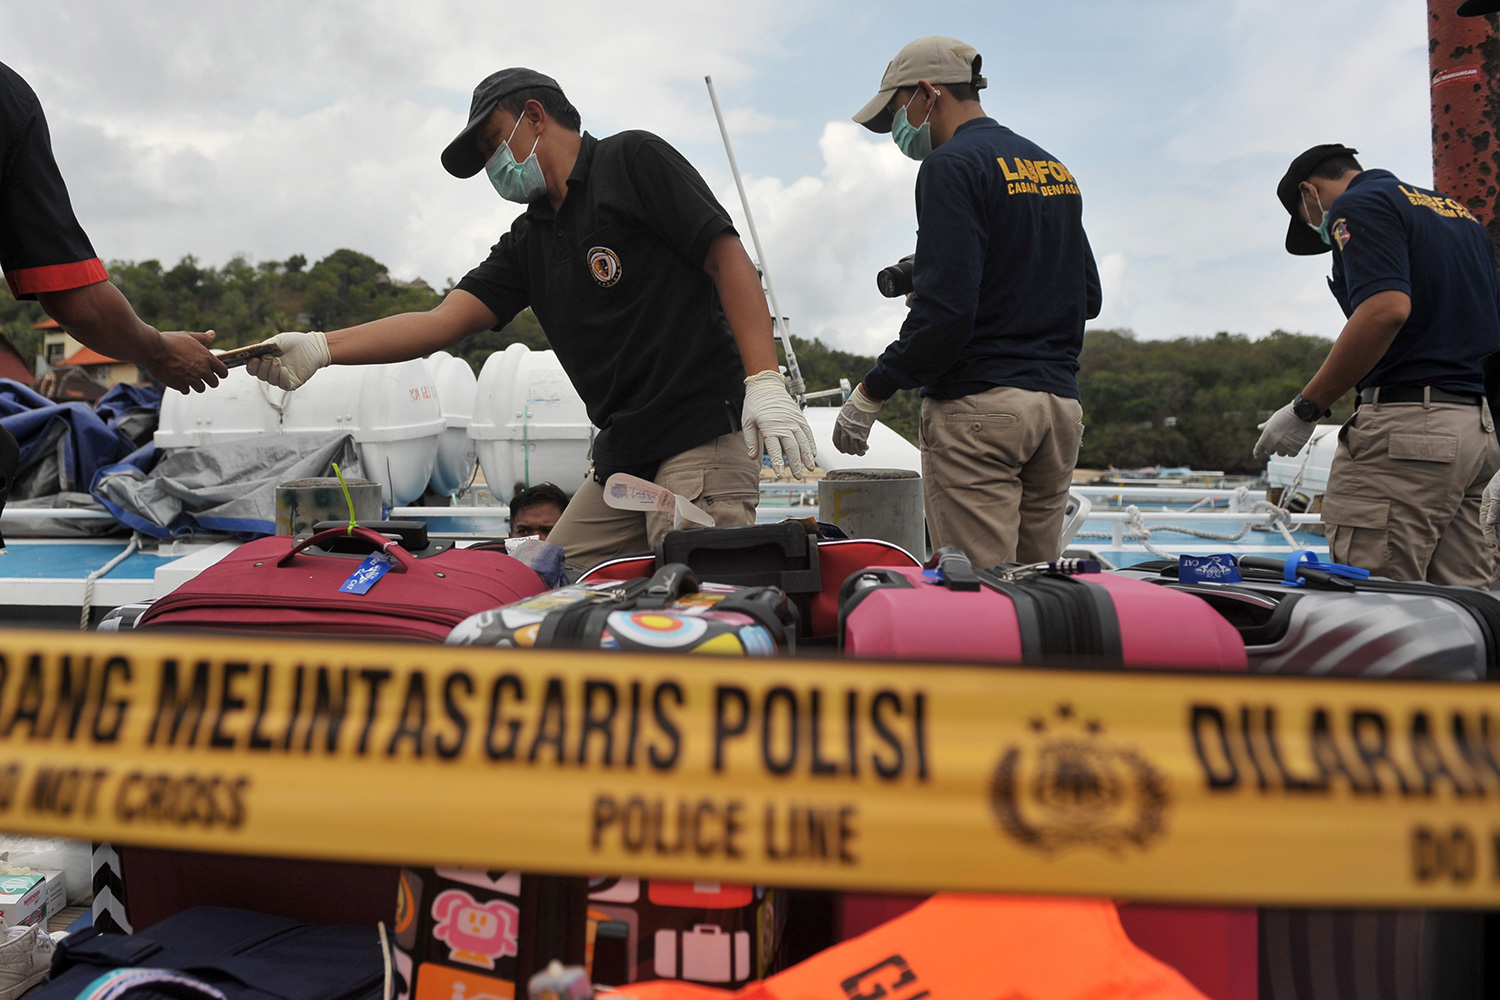 Exteriores confirma la muerte de una española en Bali tras explosionar un barco